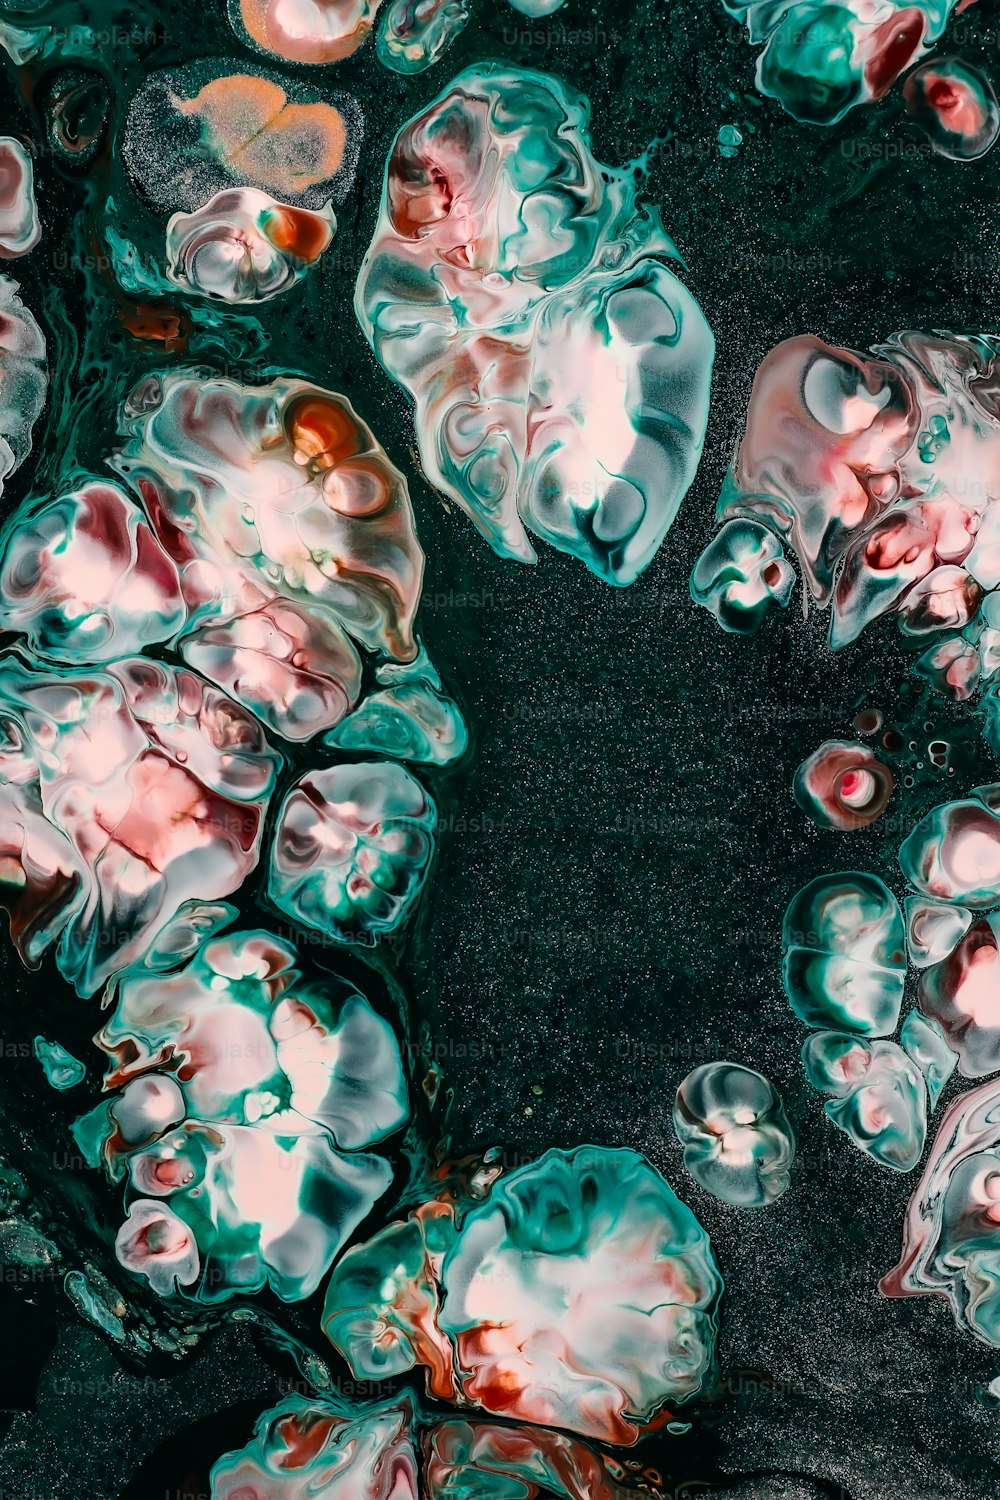 um grupo de objetos gelatinosos flutuando na água